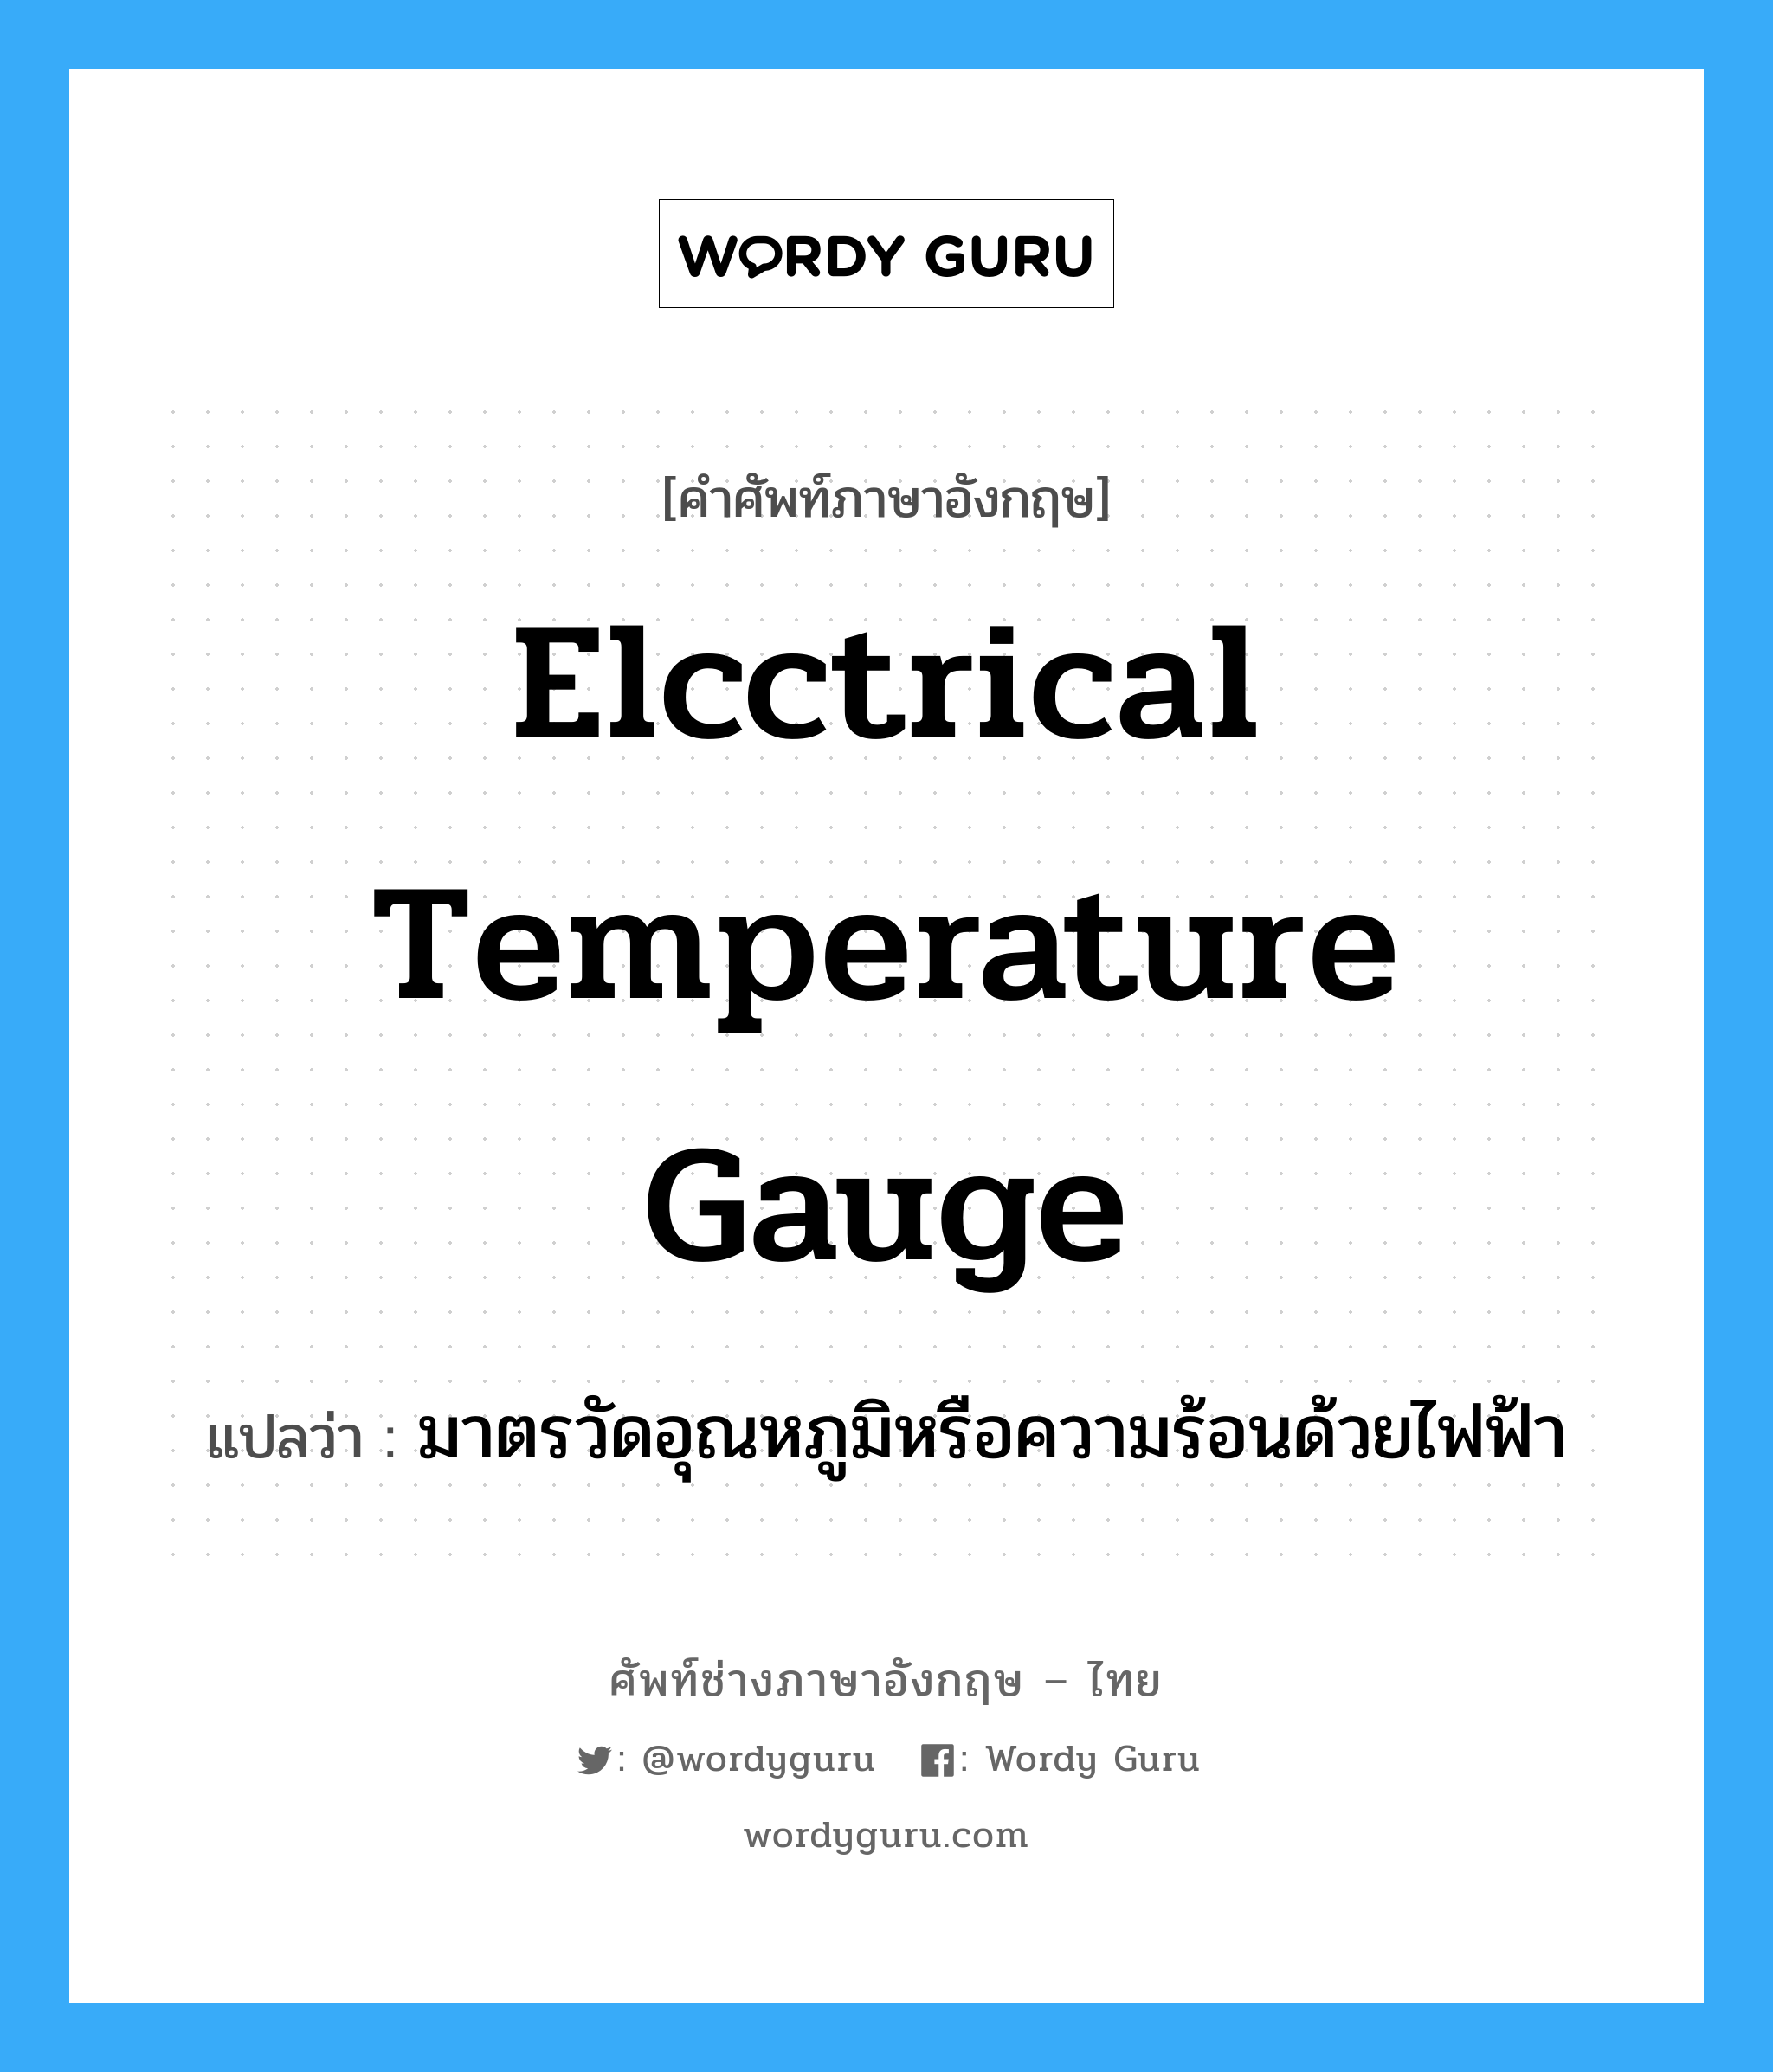 elcctrical temperature gauge แปลว่า?, คำศัพท์ช่างภาษาอังกฤษ - ไทย elcctrical temperature gauge คำศัพท์ภาษาอังกฤษ elcctrical temperature gauge แปลว่า มาตรวัดอุณหภูมิหรือความร้อนด้วยไฟฟ้า